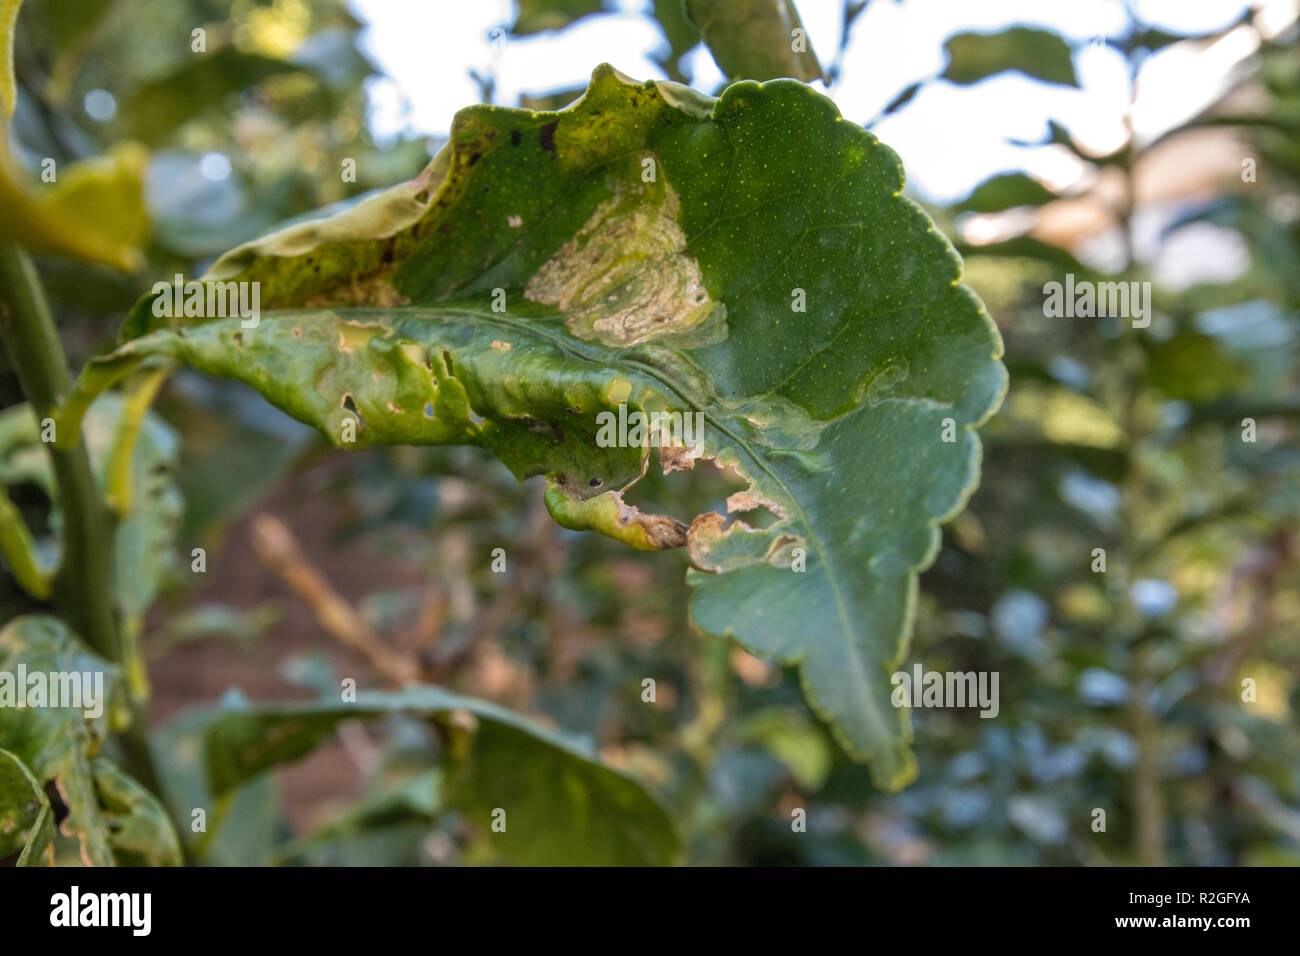 Citrus Leafminer damage to Lemon Tree Leaves and Orange Stock Photo